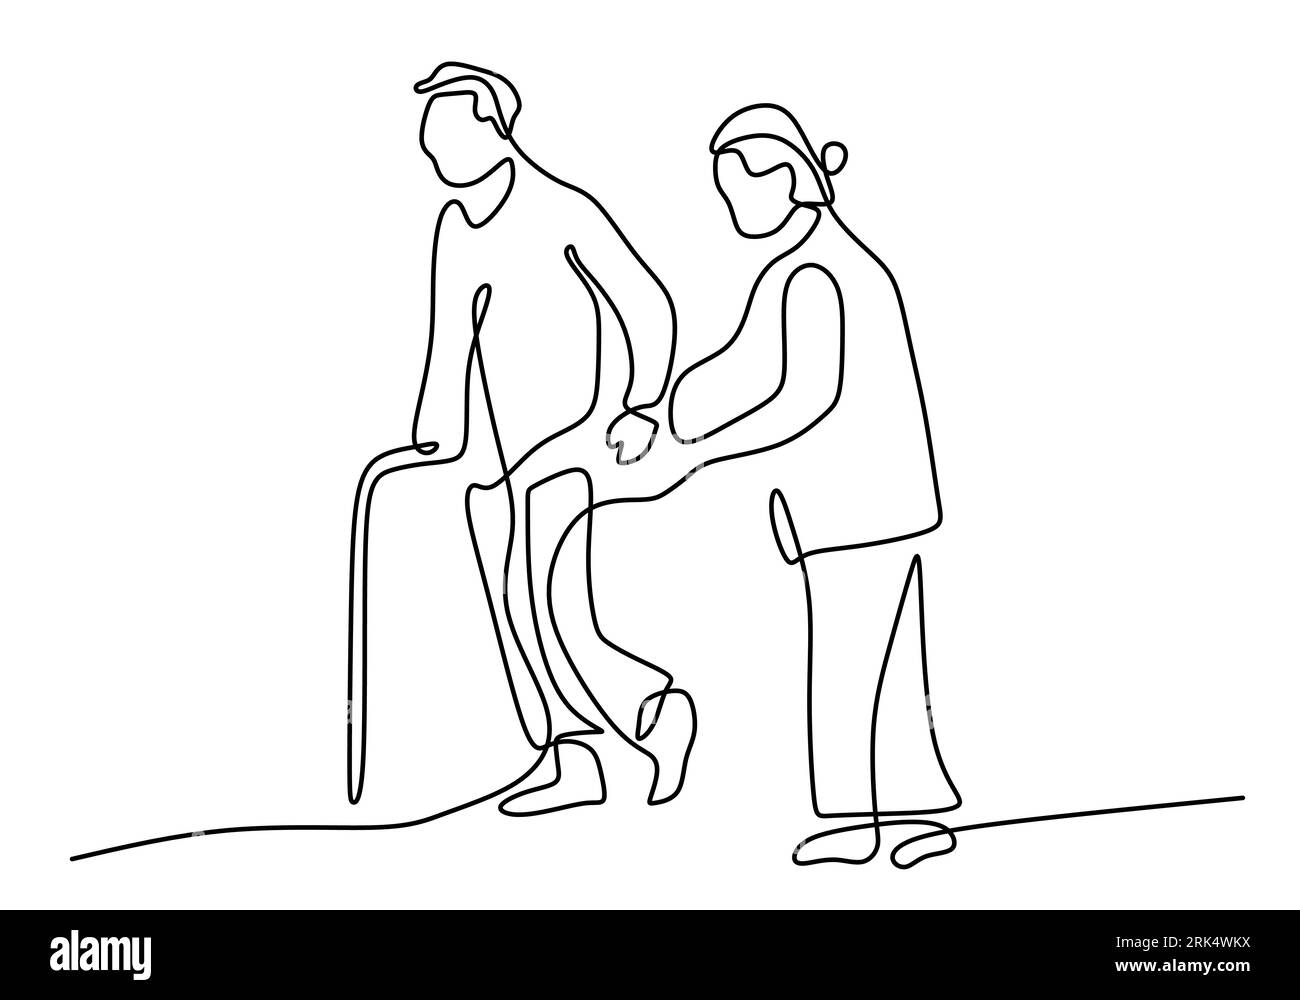 Disegnare a mano una linea di donna aiutare l'uomo disabile su sfondo bianco. Illustrazione Vettoriale